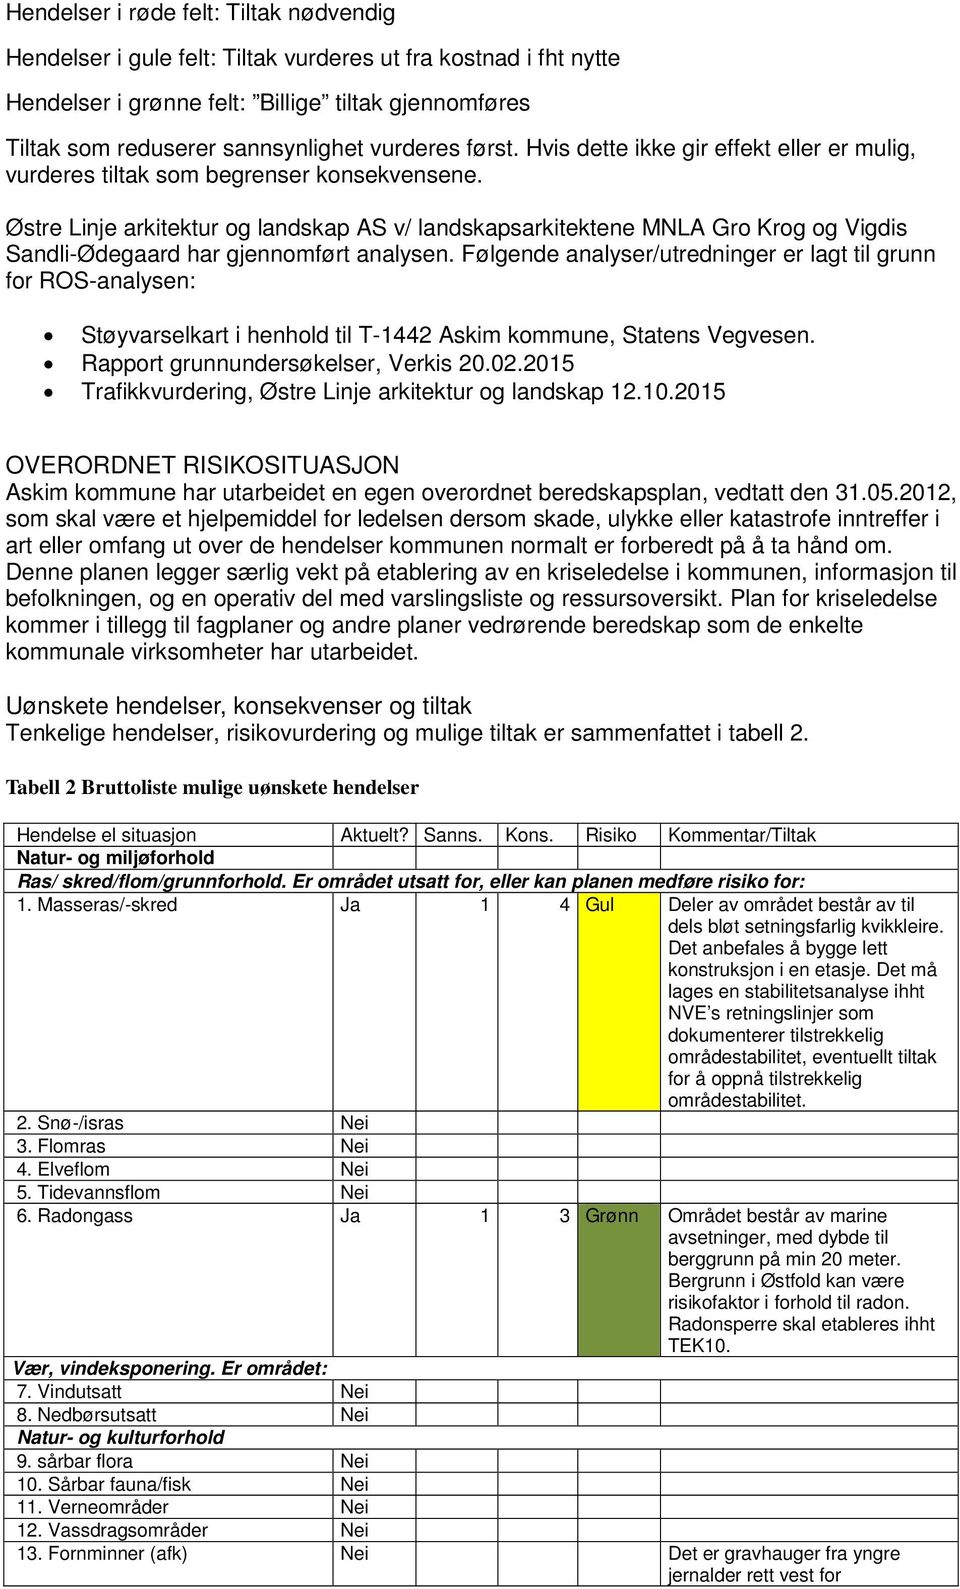 Østre Linje arkitektur og landskap AS v/ landskapsarkitektene MNLA Gro Krog og Vigdis Sandli-Ødegaard har gjennomført analysen.